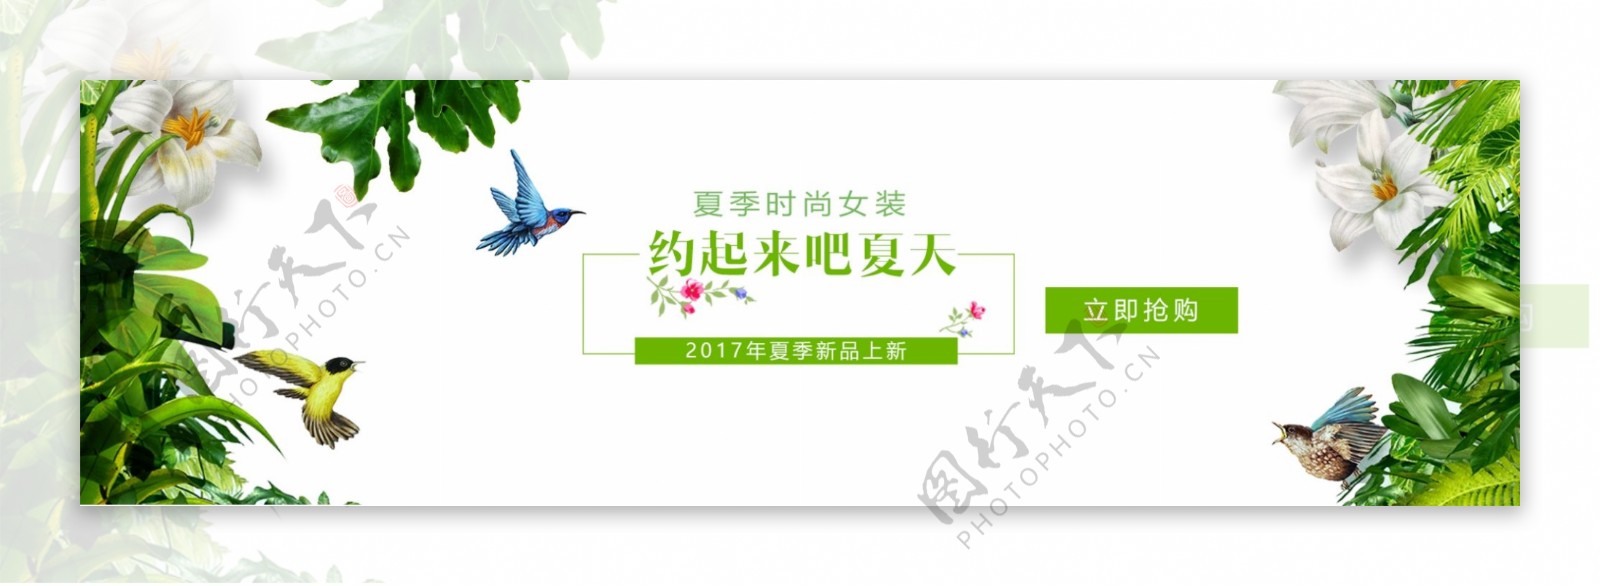 电商淘宝天猫99聚星节活动促销全品类海报banner模板设计